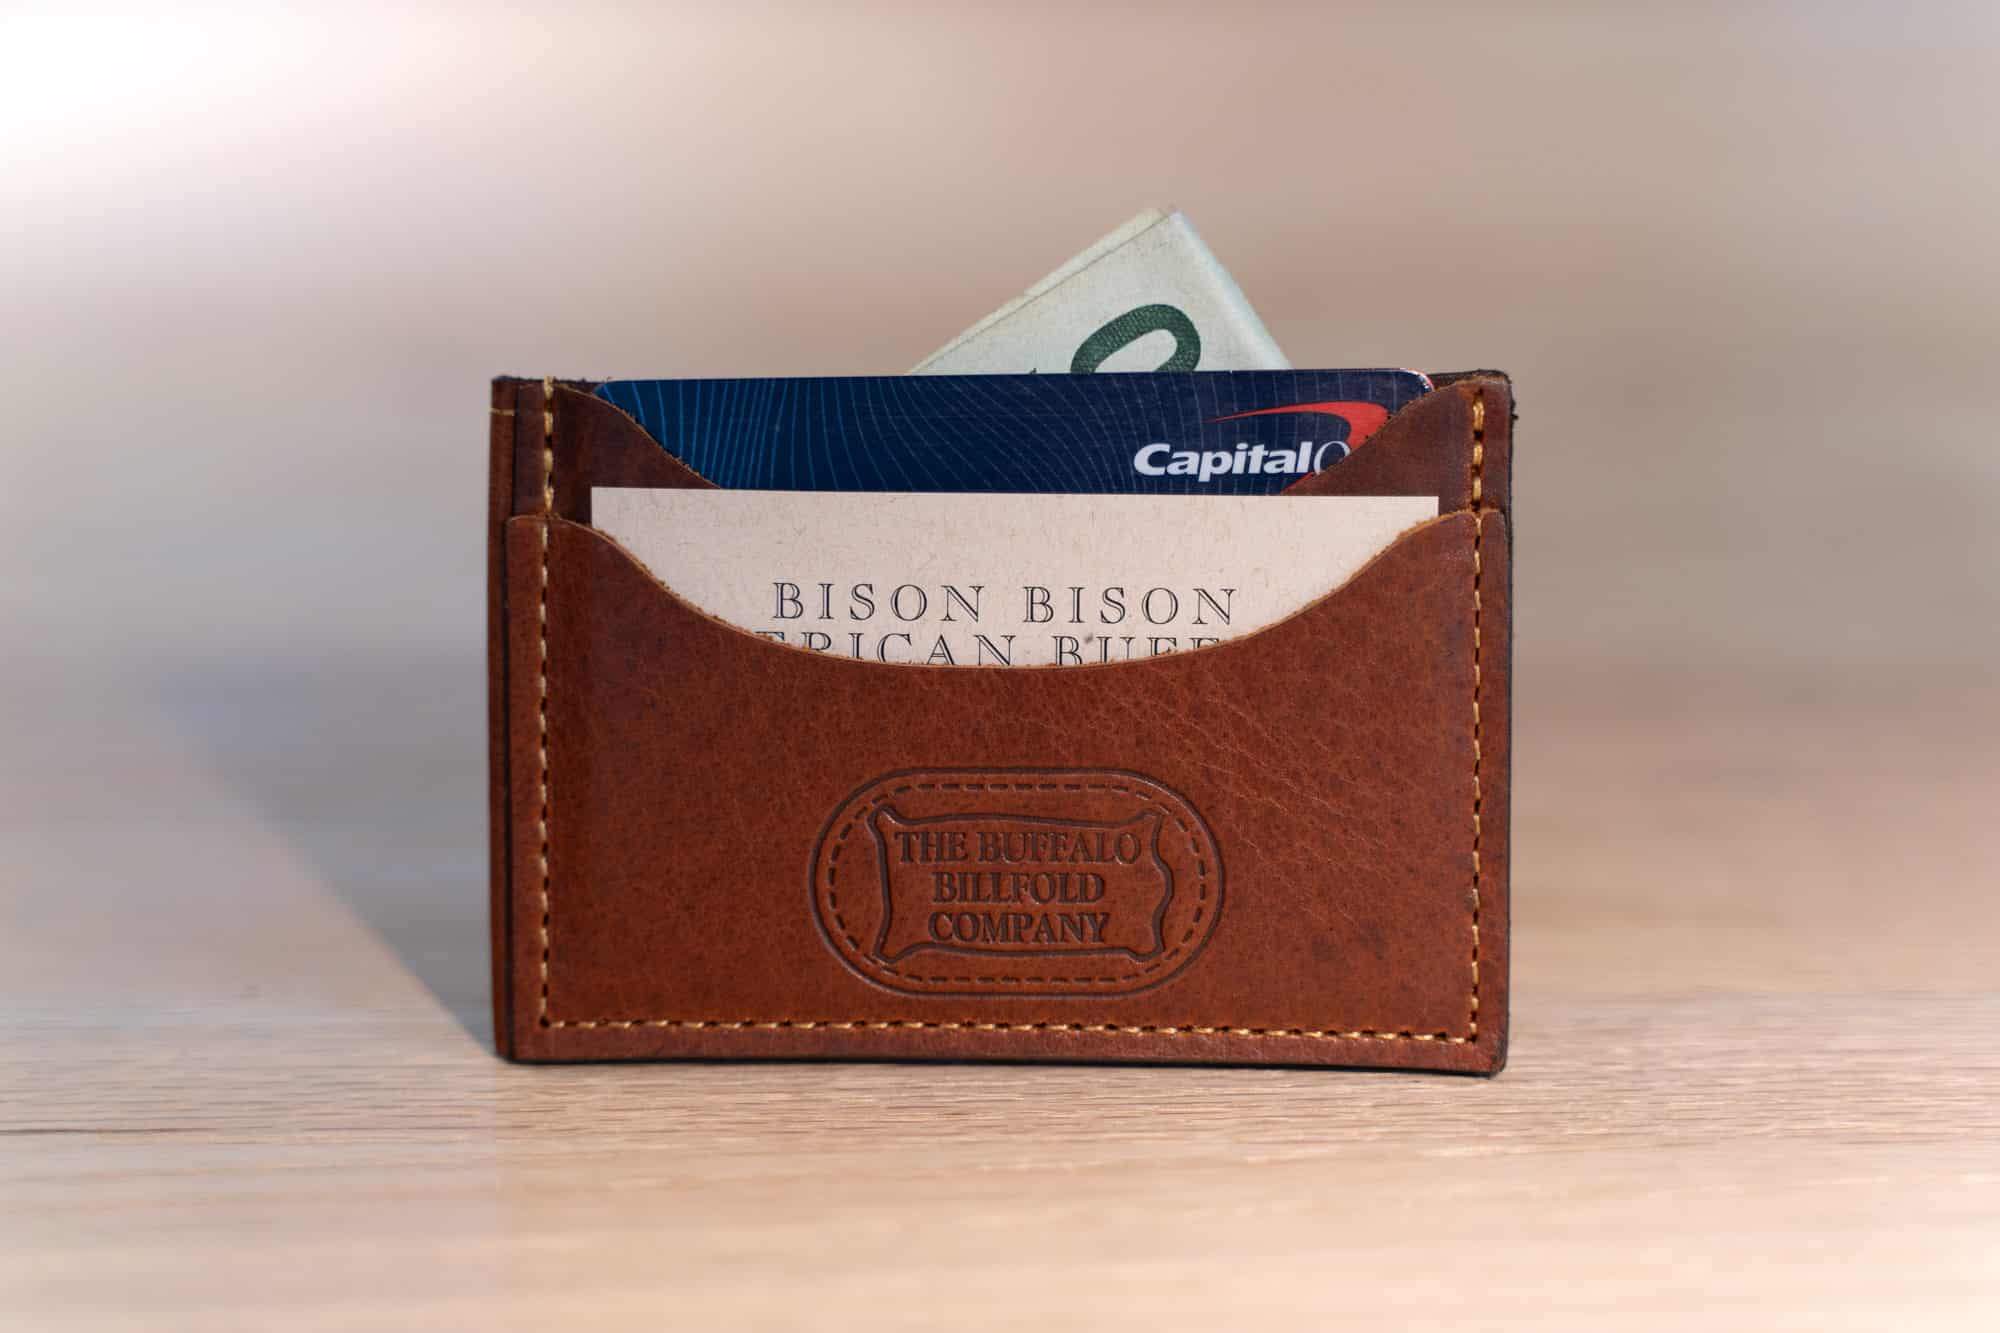 Mens Minimalist Slim Wallet Leather Credit Card Holder Bag Front Pocket  Purse US